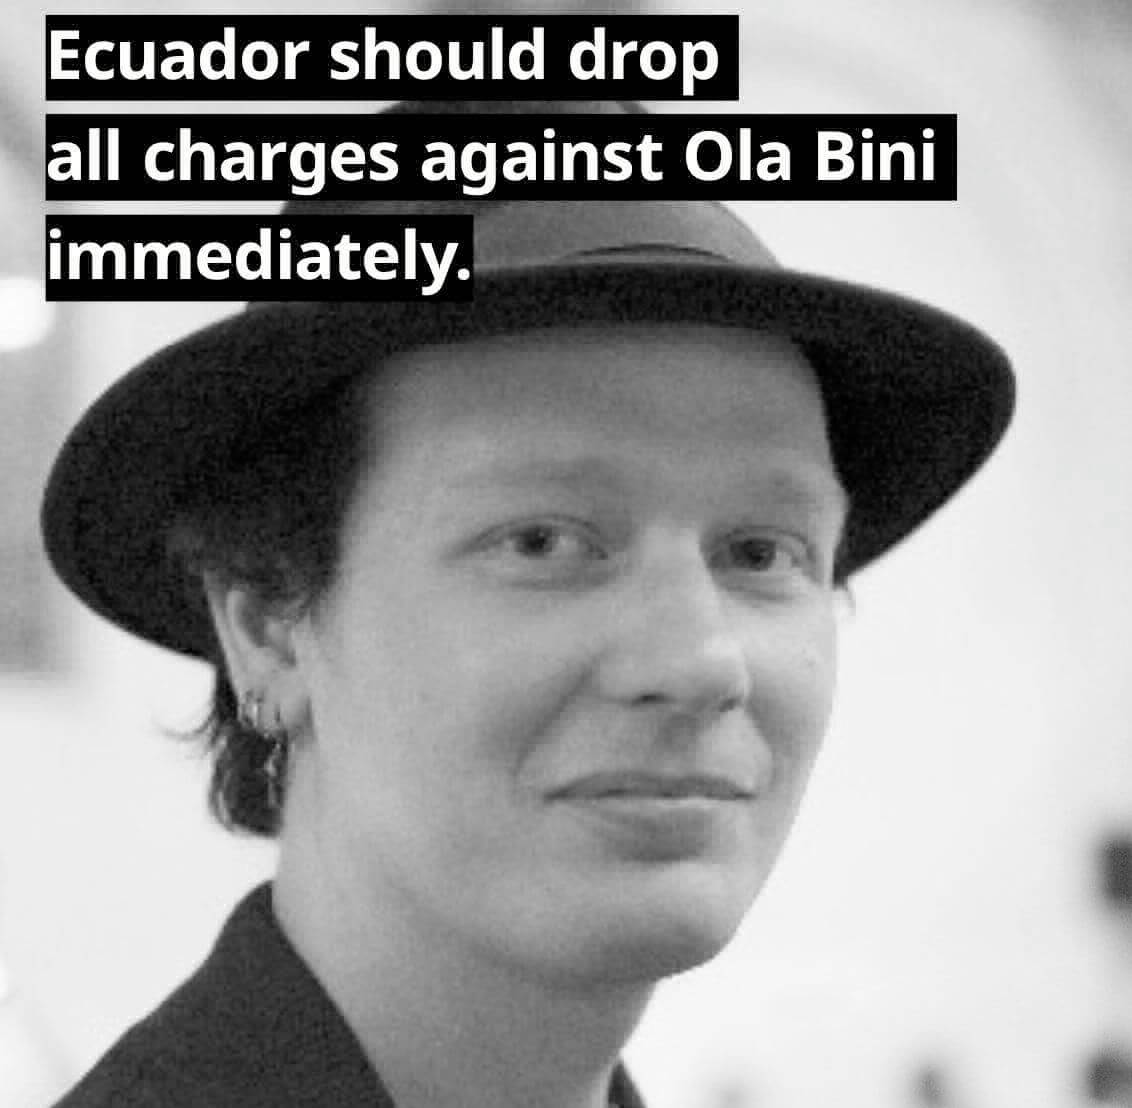 Ola Bini arrêté en Equateur